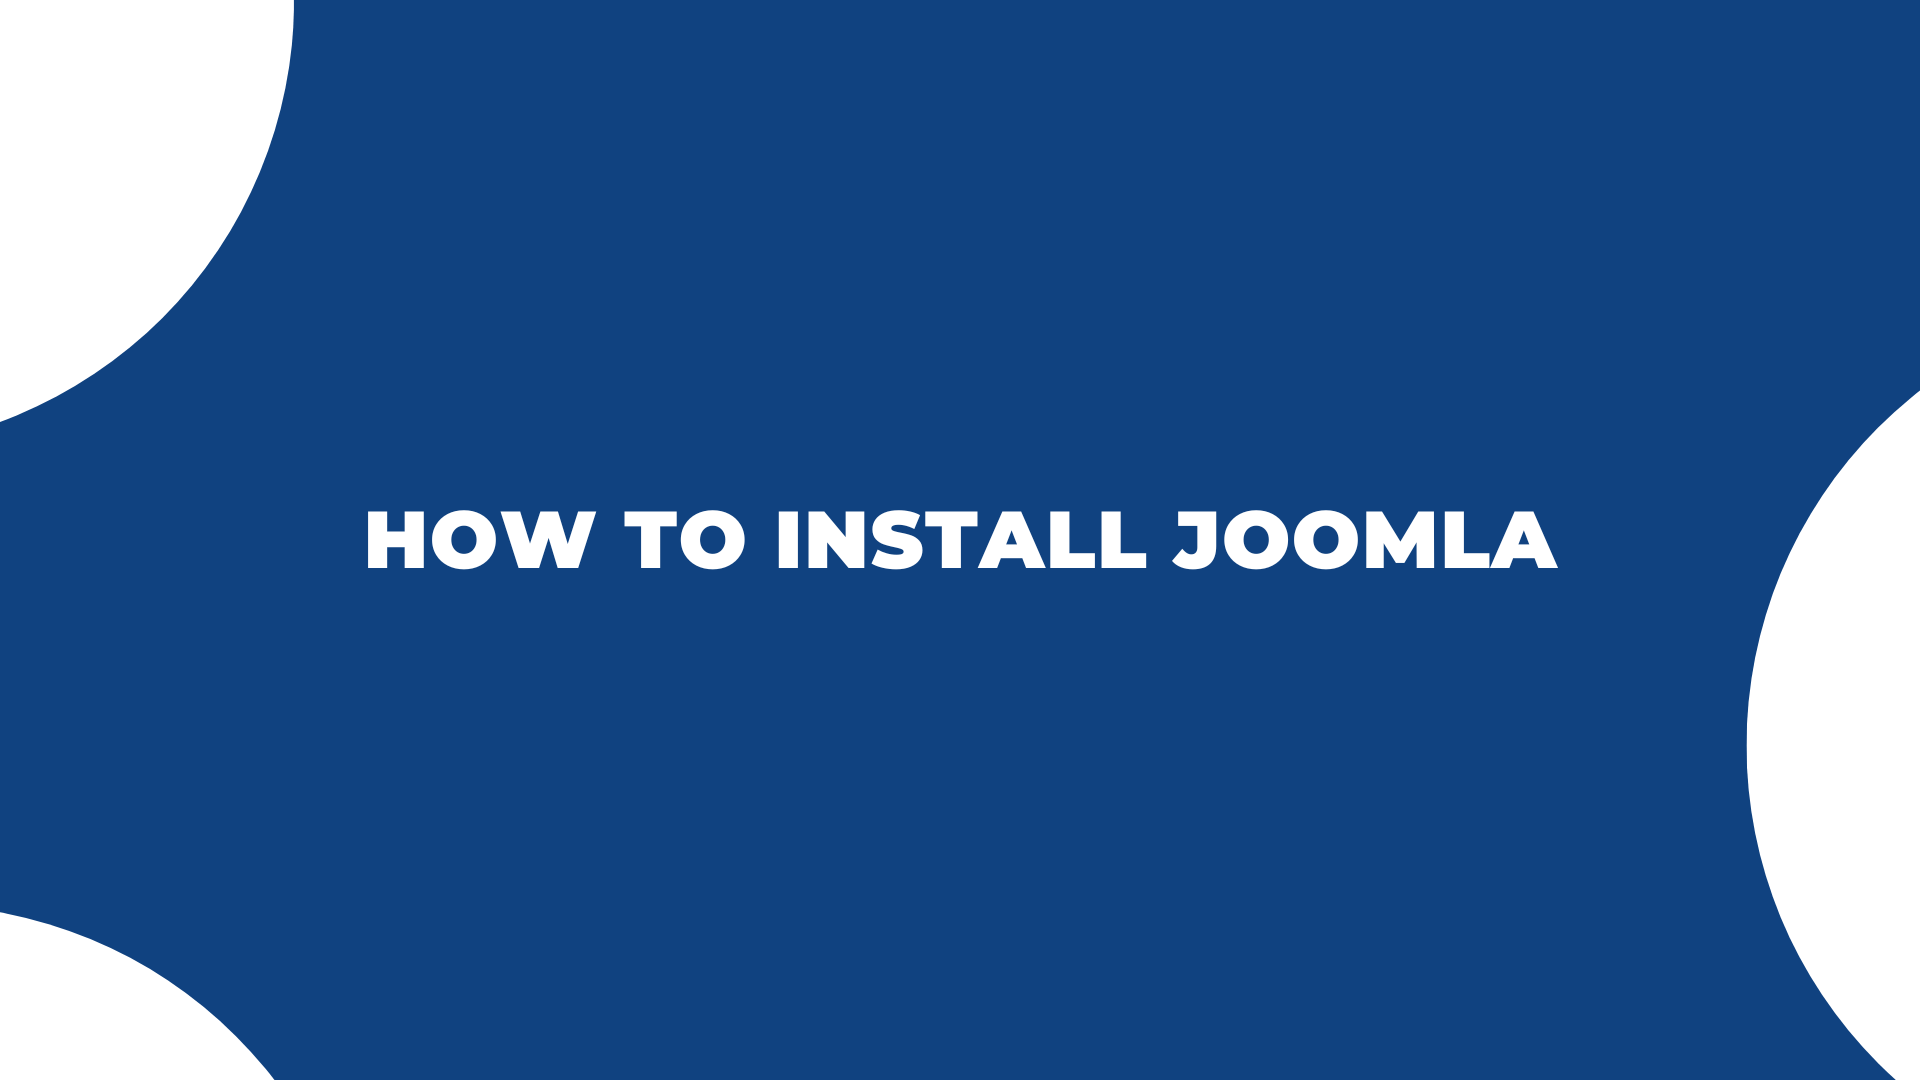 ordasoft Joomla News: How To Install Joomla